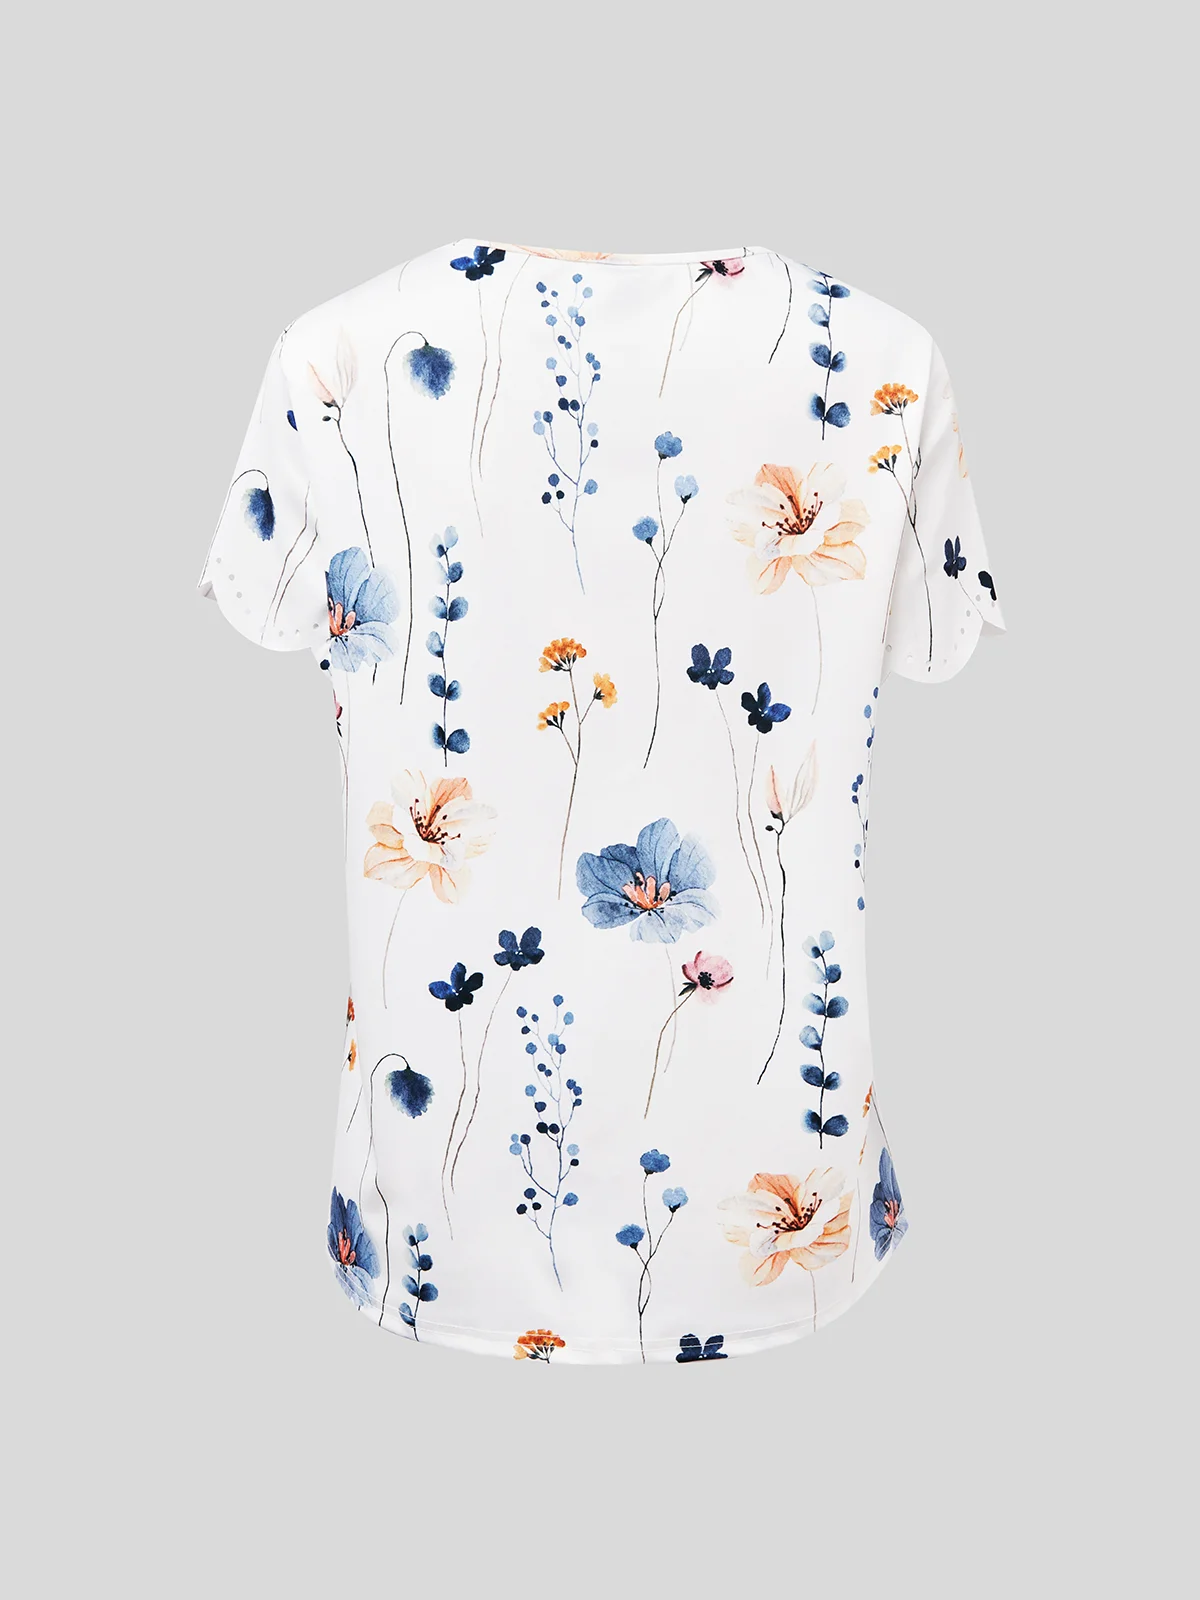 Sommer Nachtisch Oberstoff Kragen Geblümt Design T-Shirt